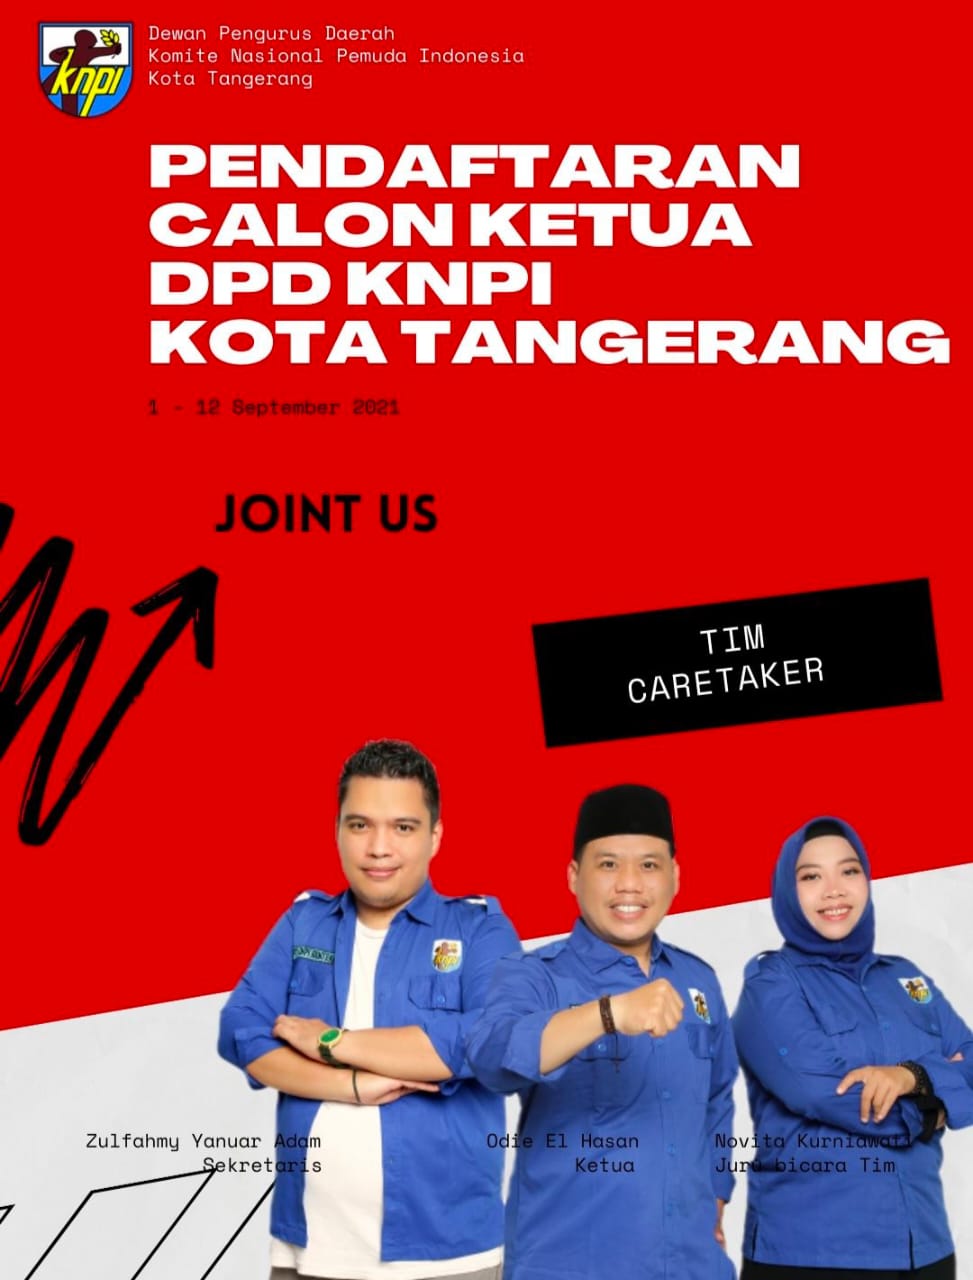 Gambar Pendaftaran Calon Ketua DPD KNPI Kota Tangerang Dibuka Mulai Hari Ini 36